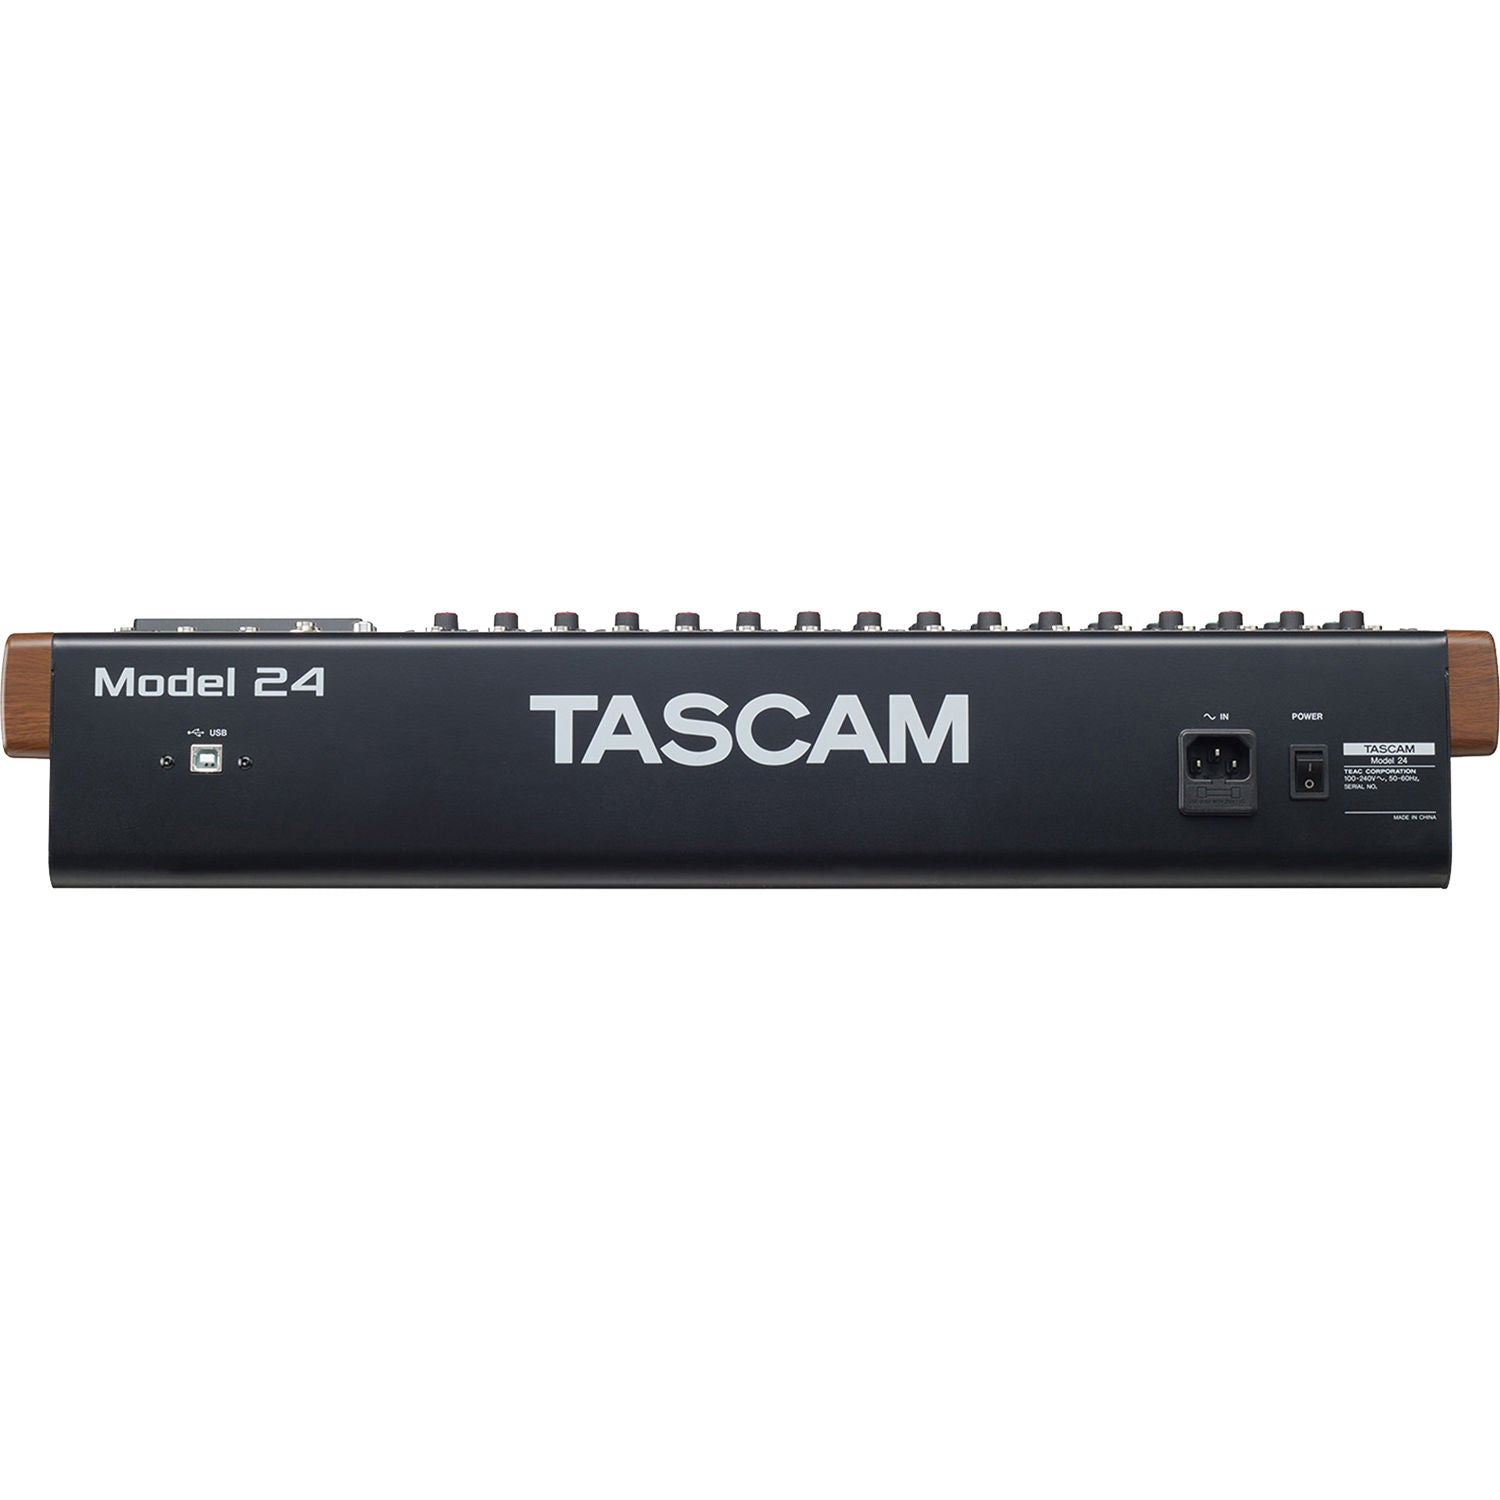 Tascam Model 24 Mixer Híbrido, Grabador Multipista e Interfaz de Audio USB Mixers/Consolas TASCAM 